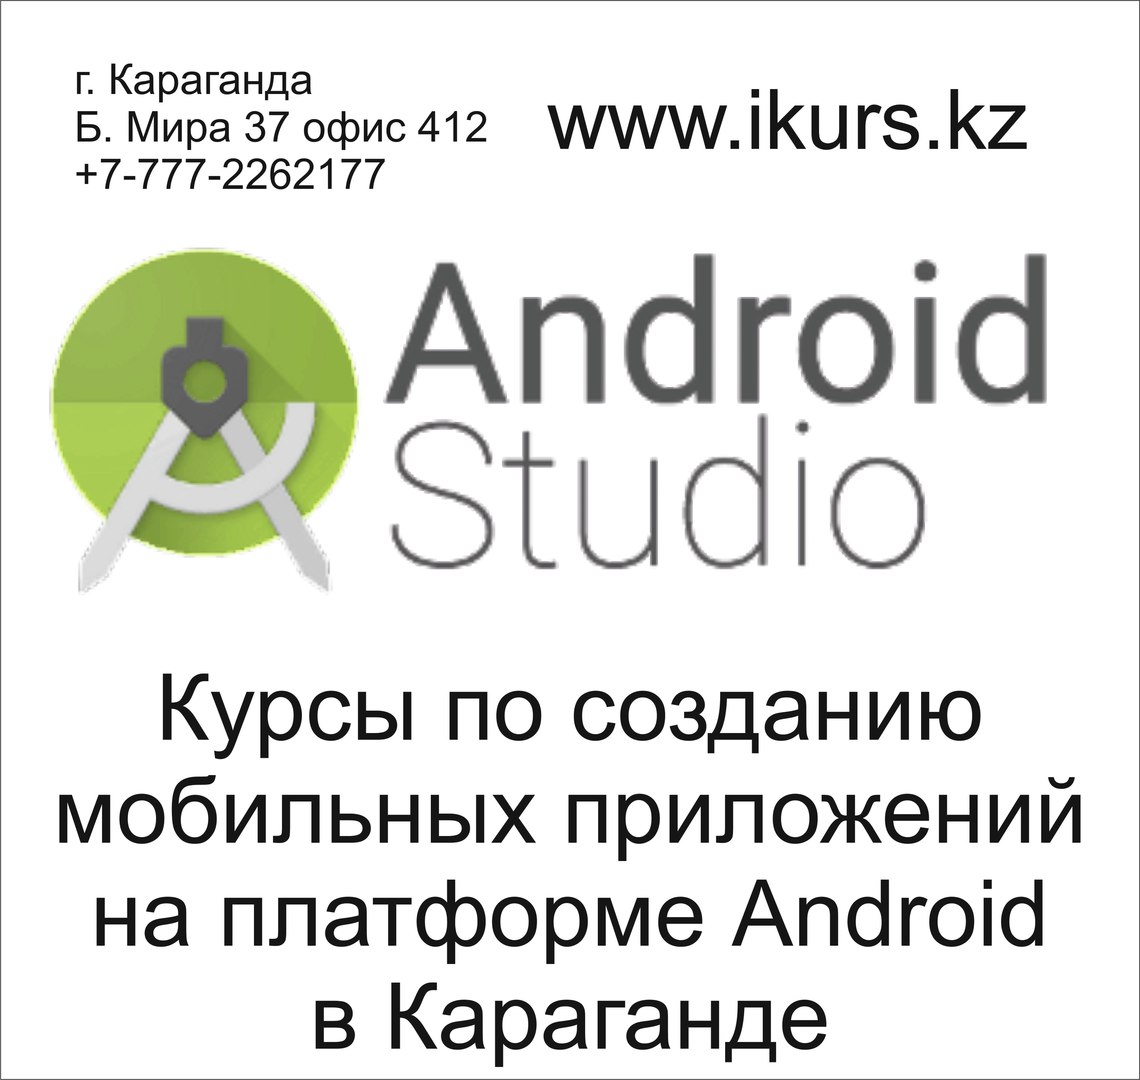 Курсы по созданию мобильных приложений на платформу Android в Караганде.